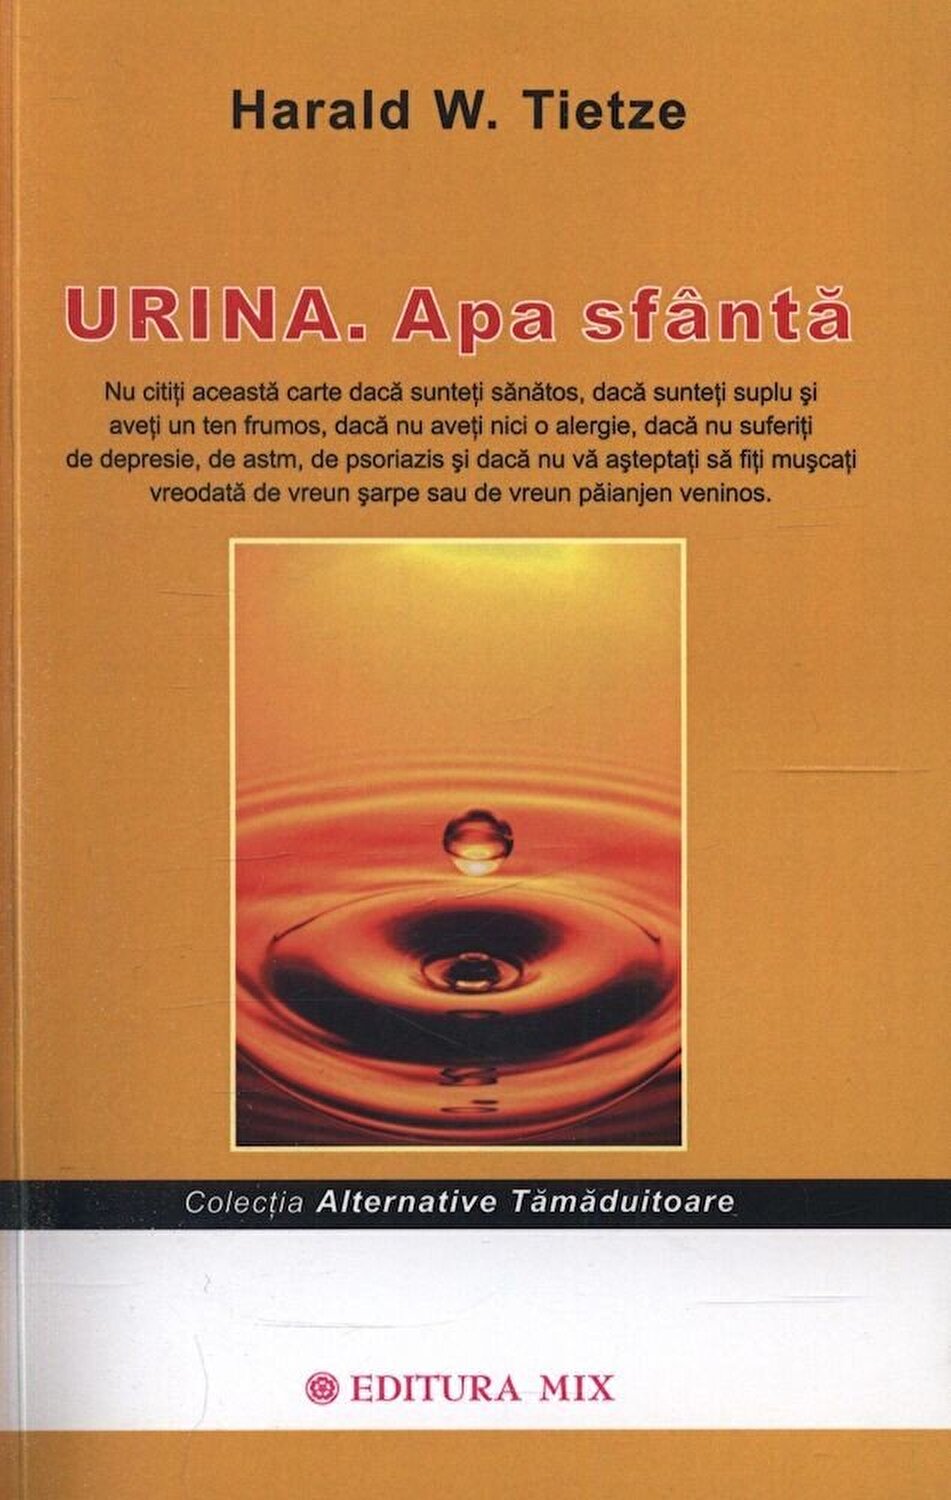 PDF Urina. Apa sfanta | Herald W. Tietze carturesti.ro Carte